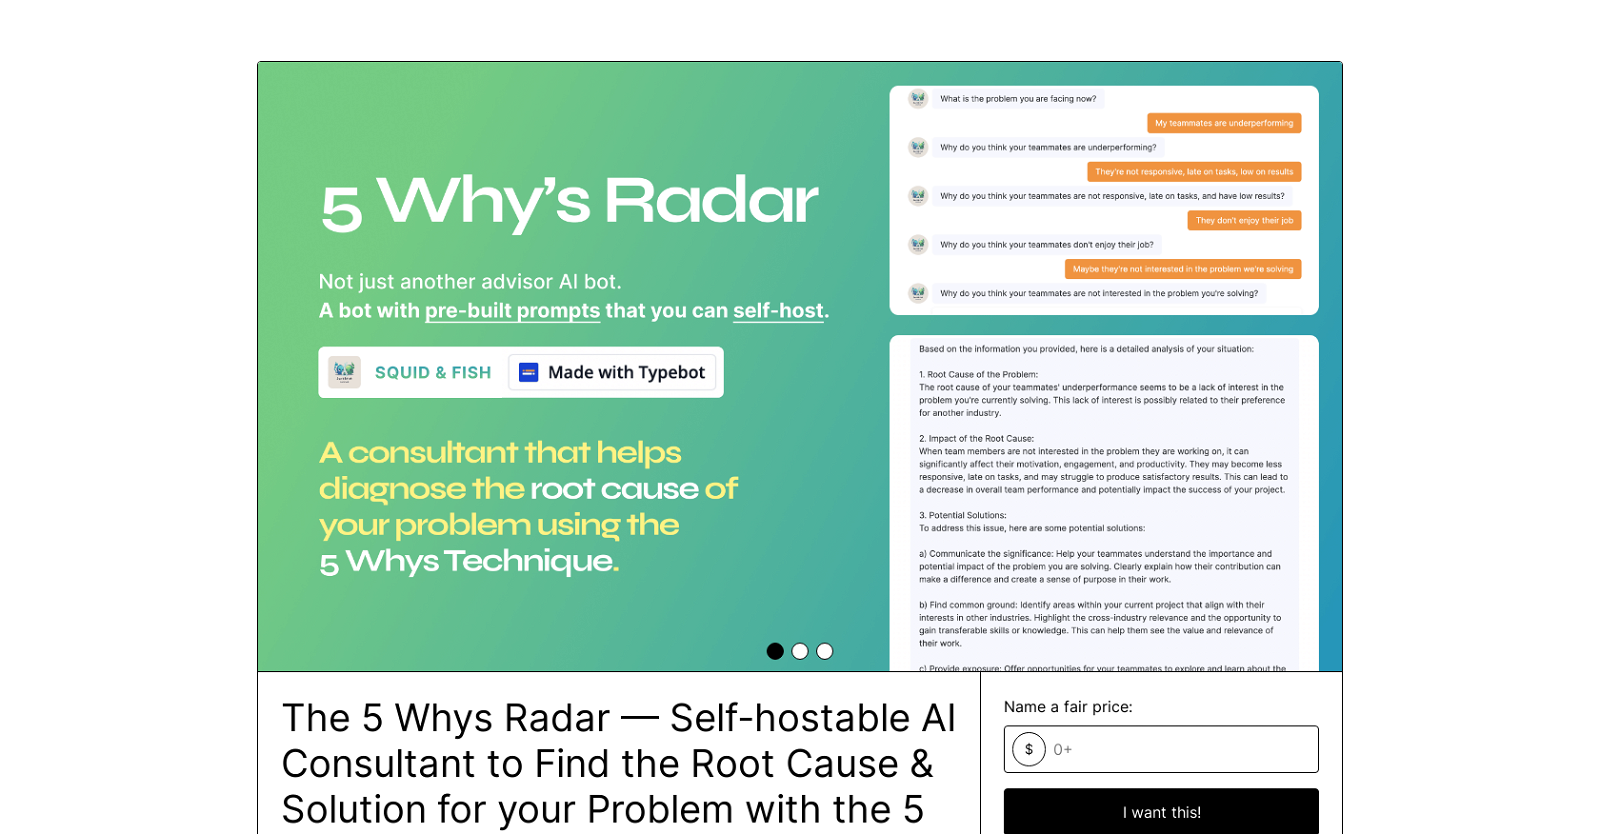 5 Whys Radar